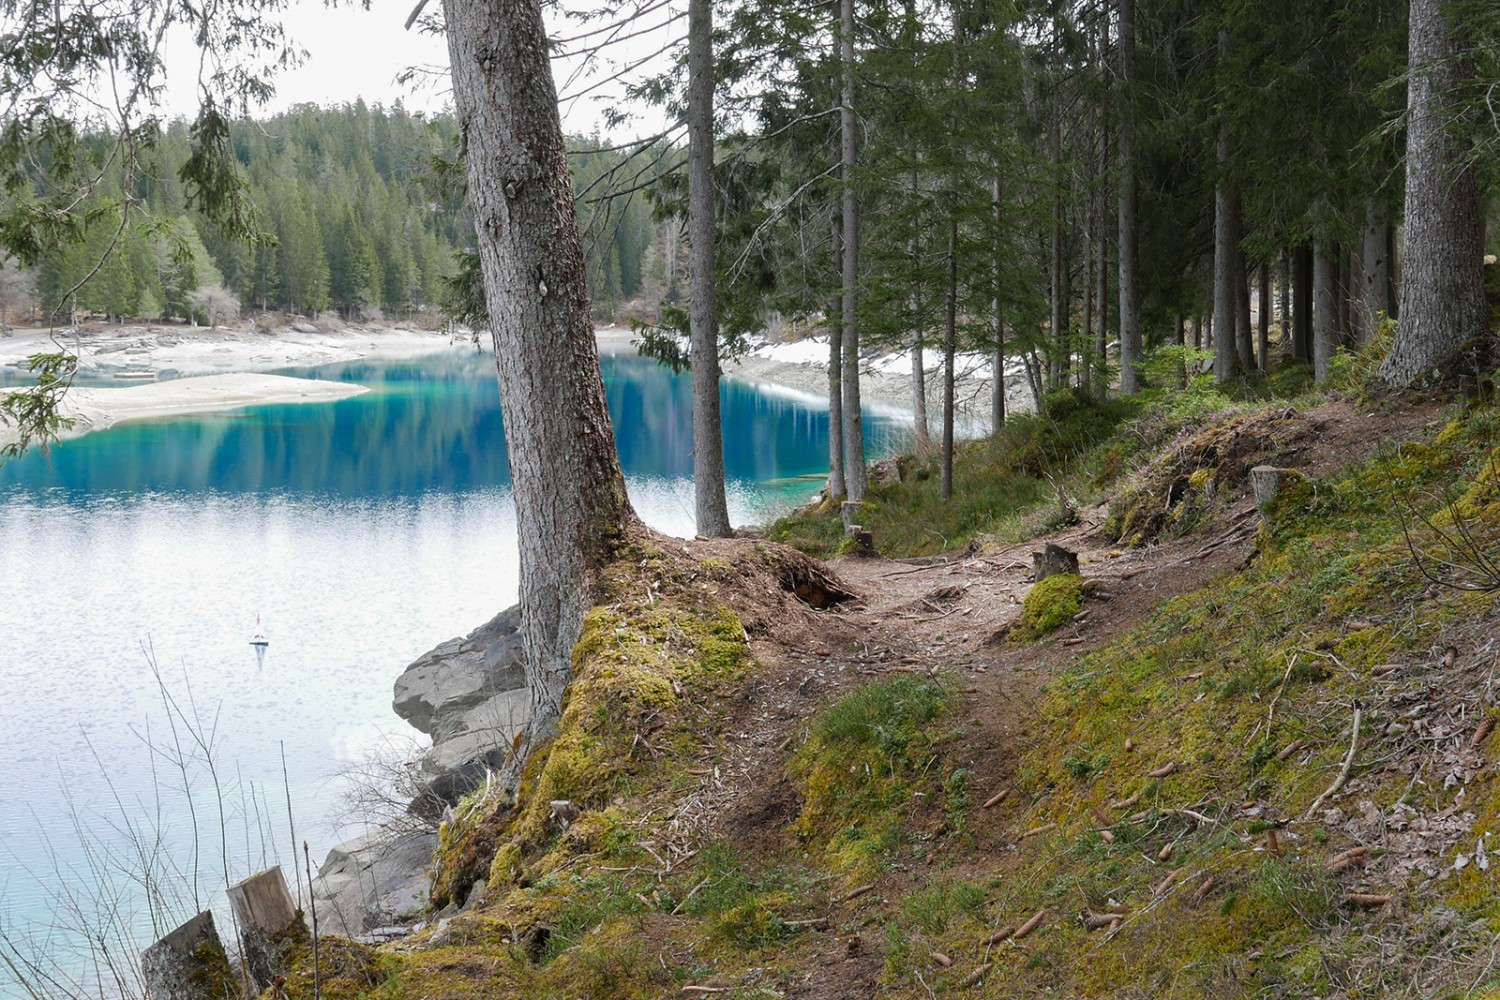 Tiefgrüne Wälder und türkisblaue Bergseen: Kontrastreiche Farben prägen die Wanderung. Bilder: Susanne Frauenfelder